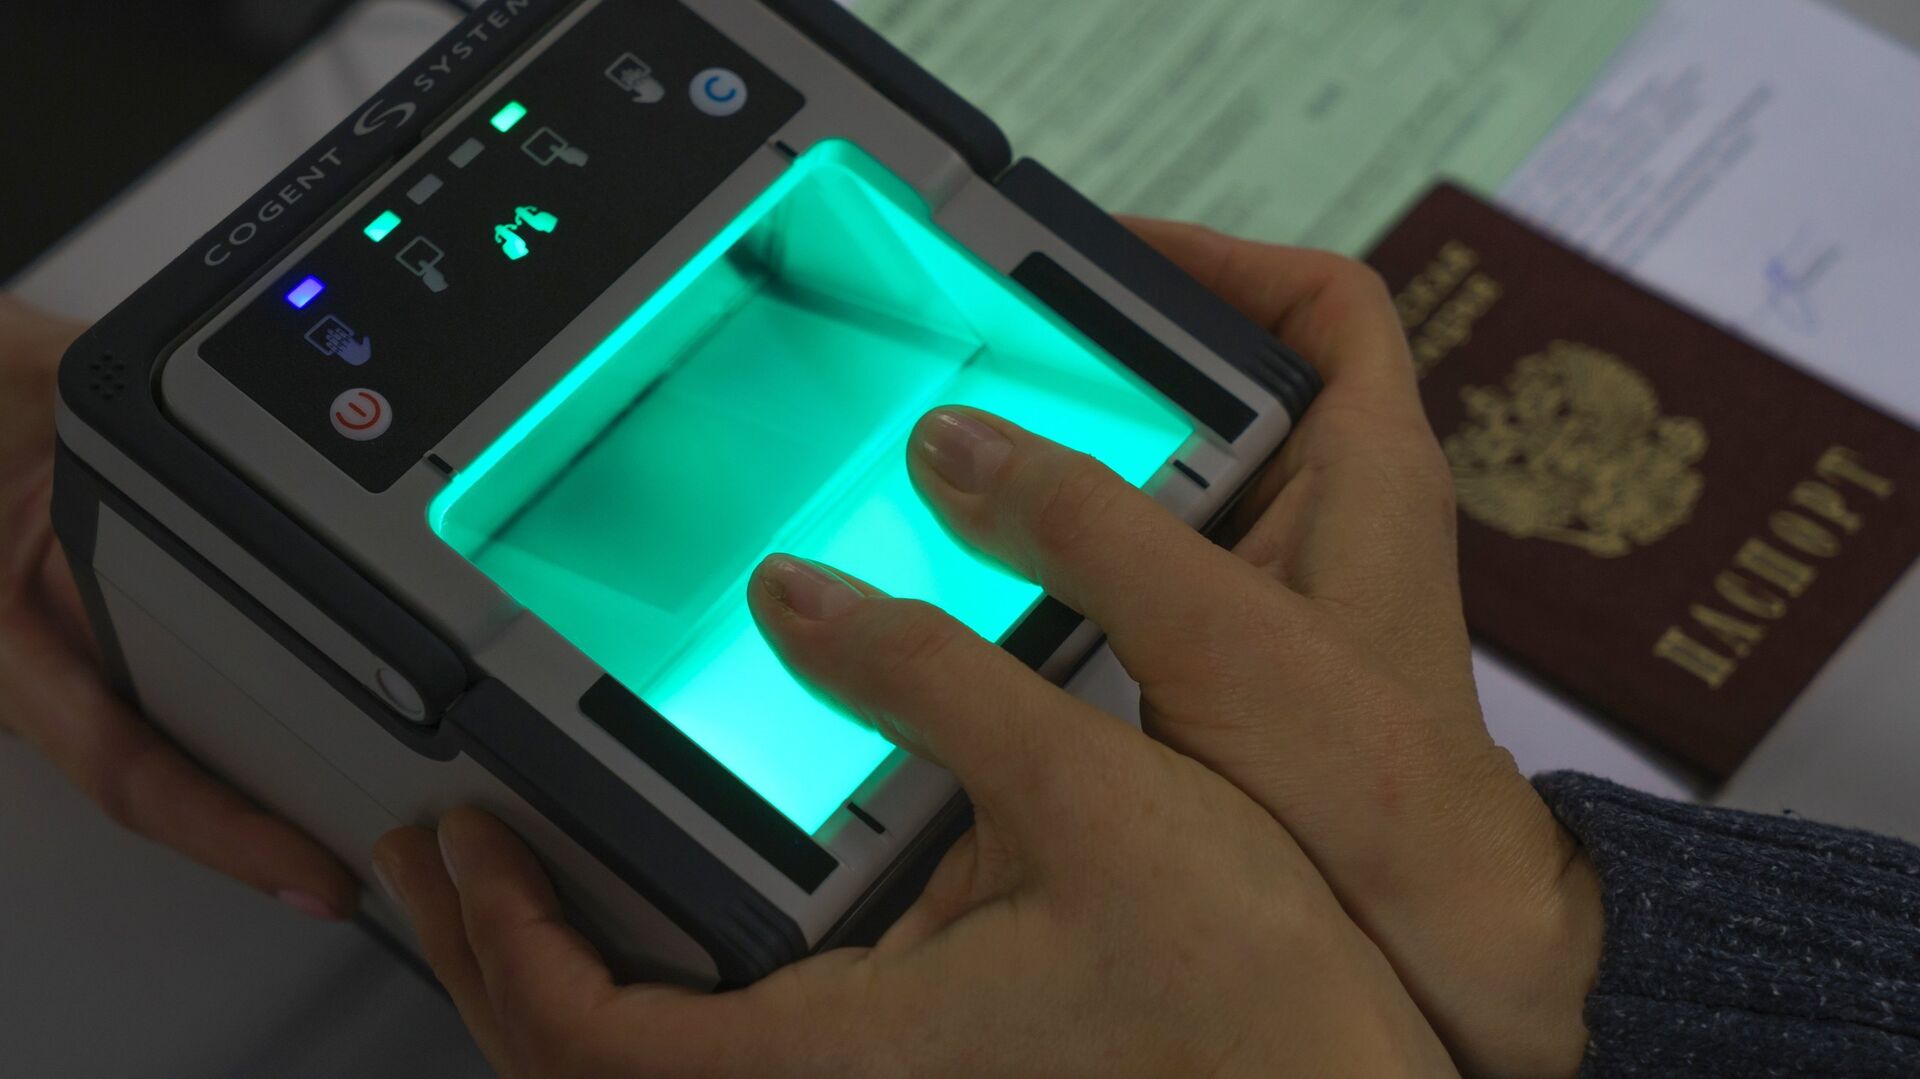 Получение почты и открытие бизнеса по биометрии станут доступны в России